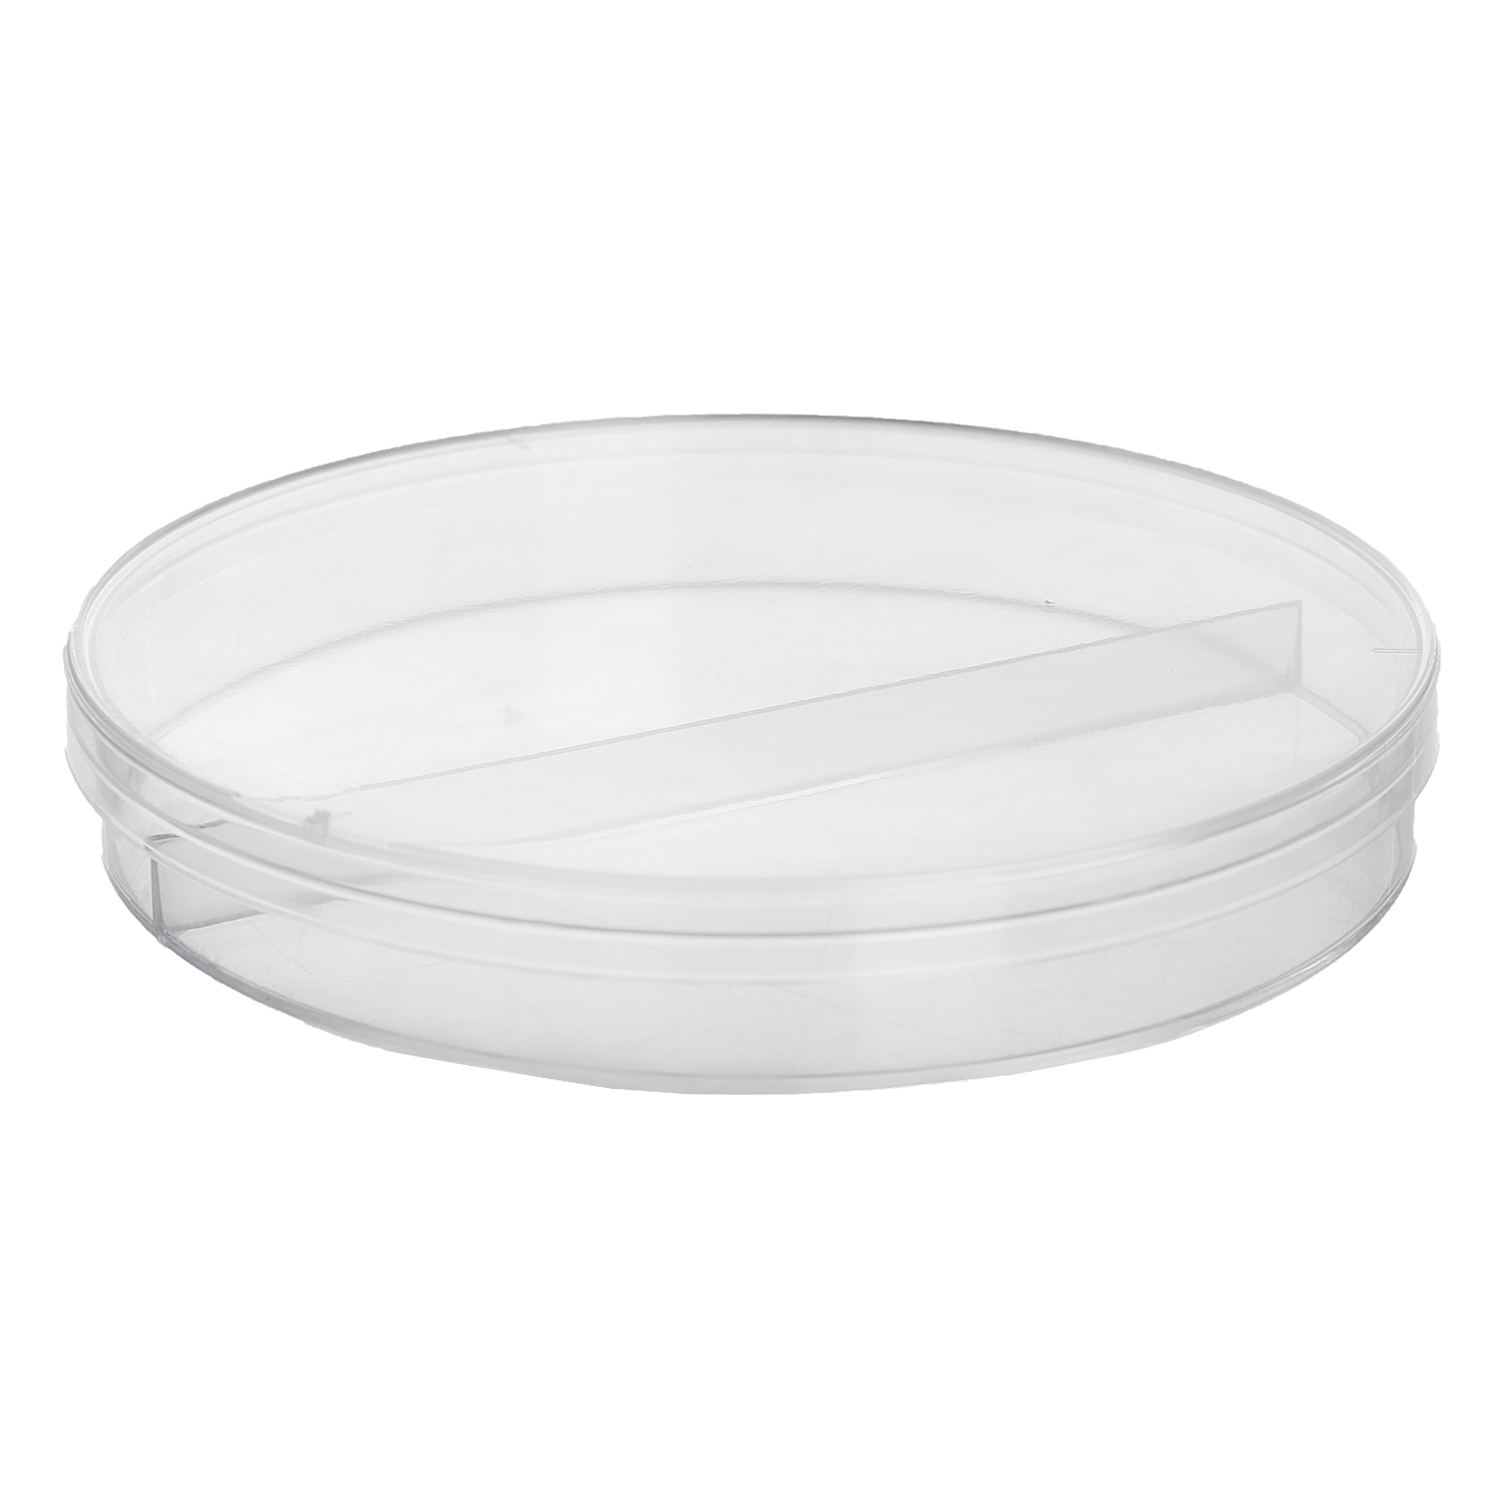 Petri-dish 9 cm (2 compartment)